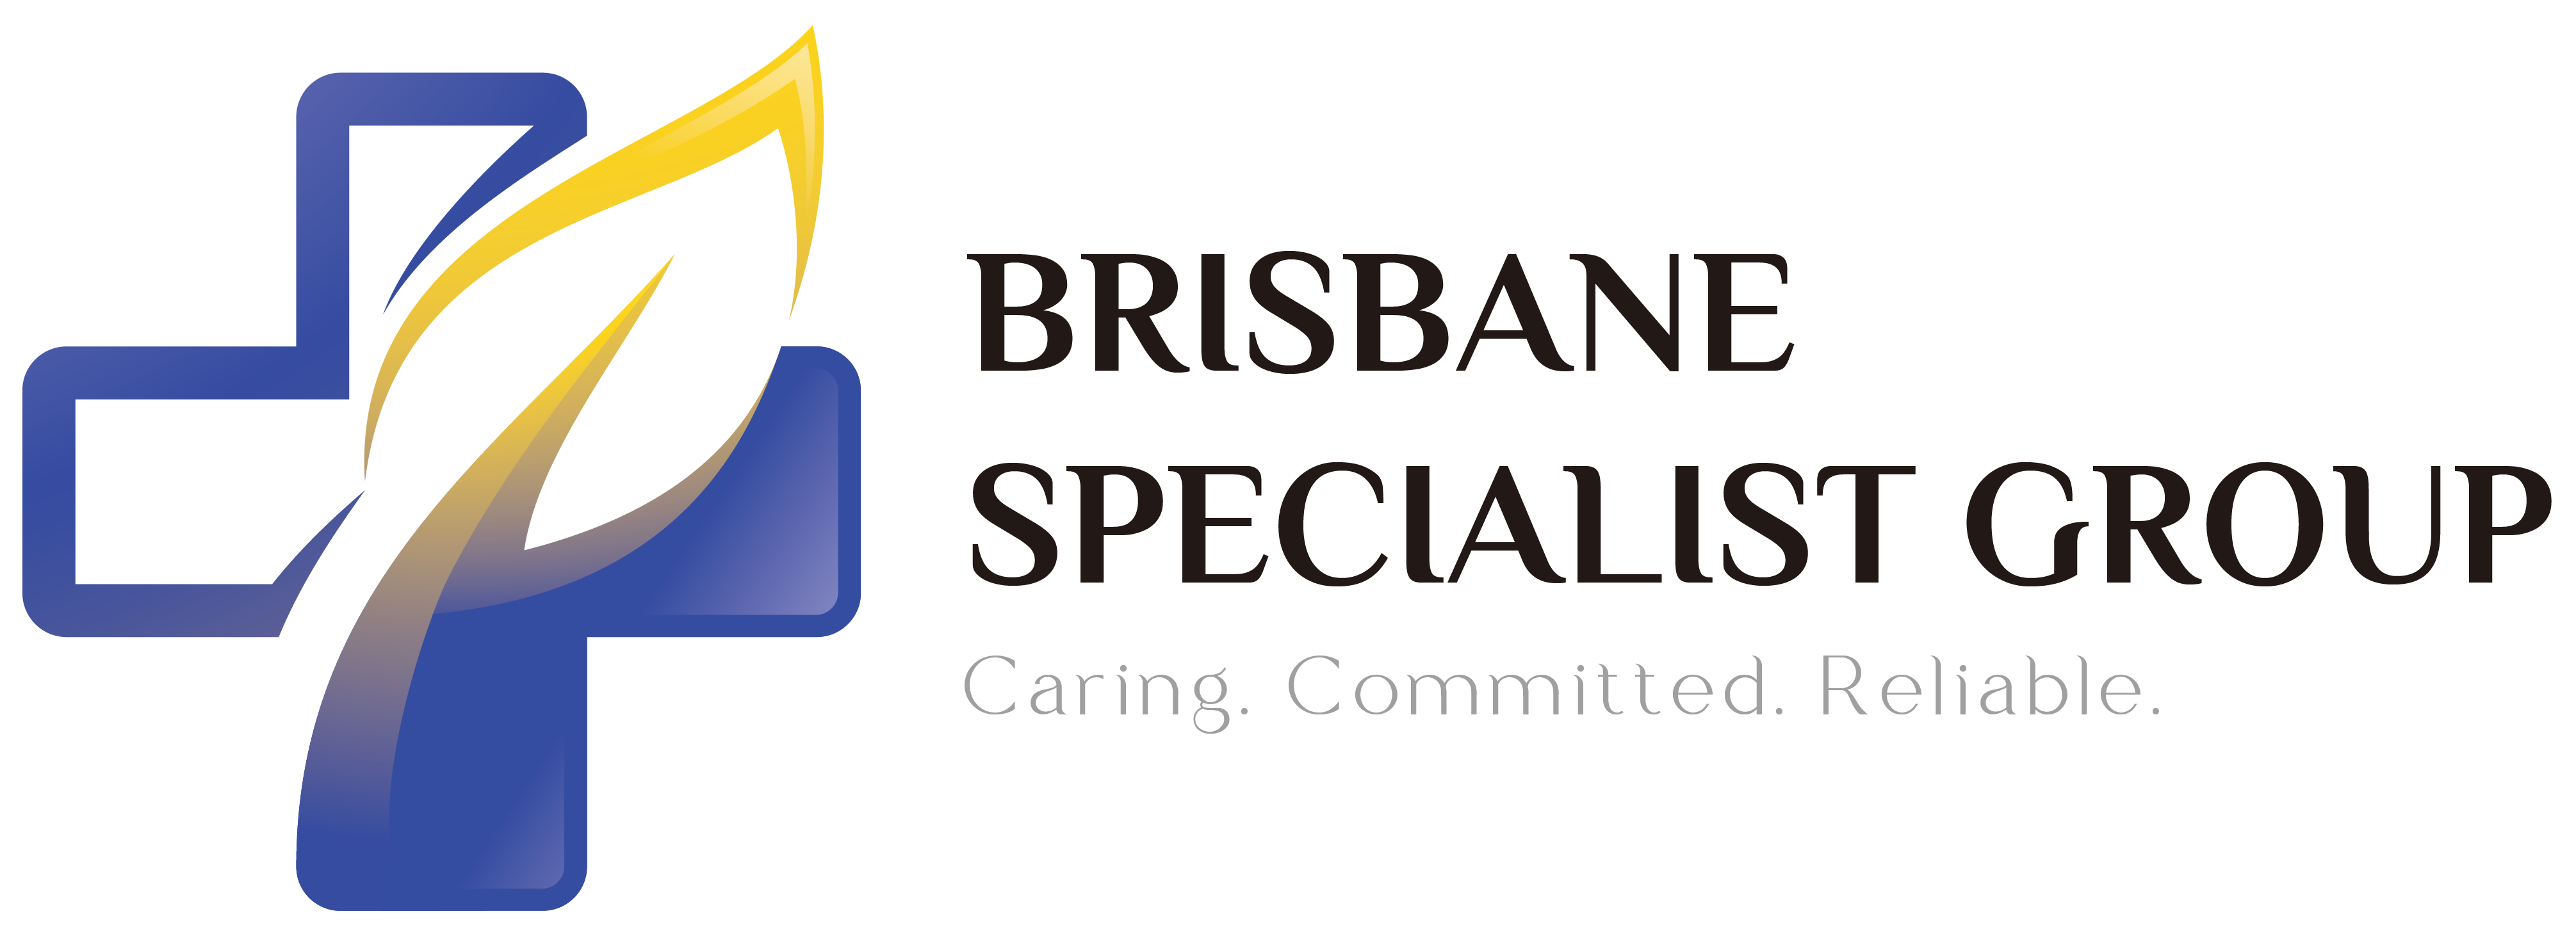 Brisbane Specialist Group